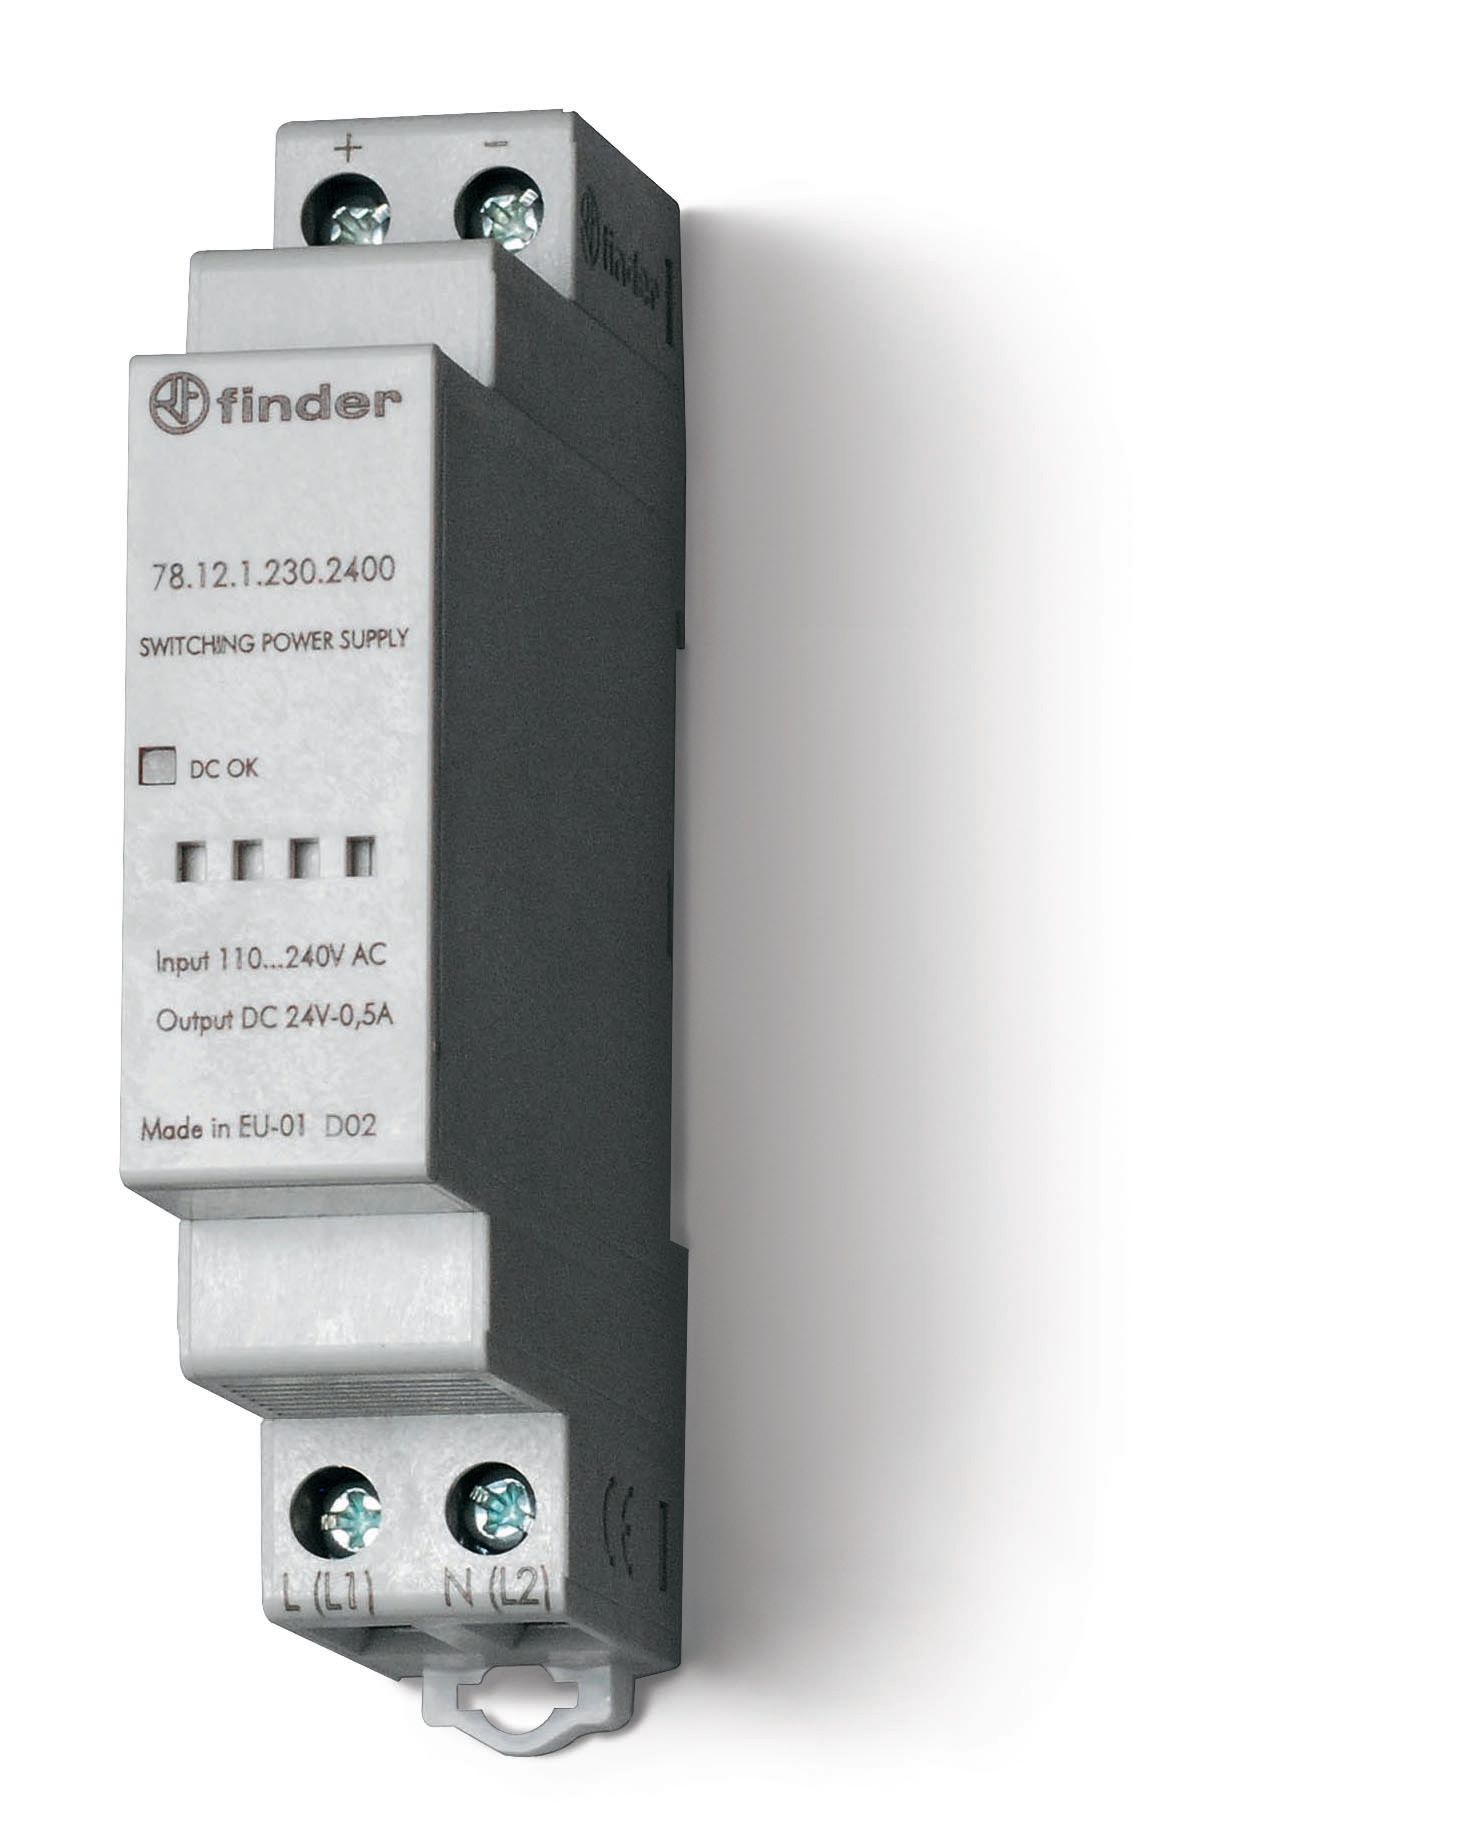 Изображение Finder Импульсный источник питания; вход 110...240В AC; выход 24В DC, 12Вт; модульный, ширина 17.5мм; степень защиты IP20; упаковка 1шт.